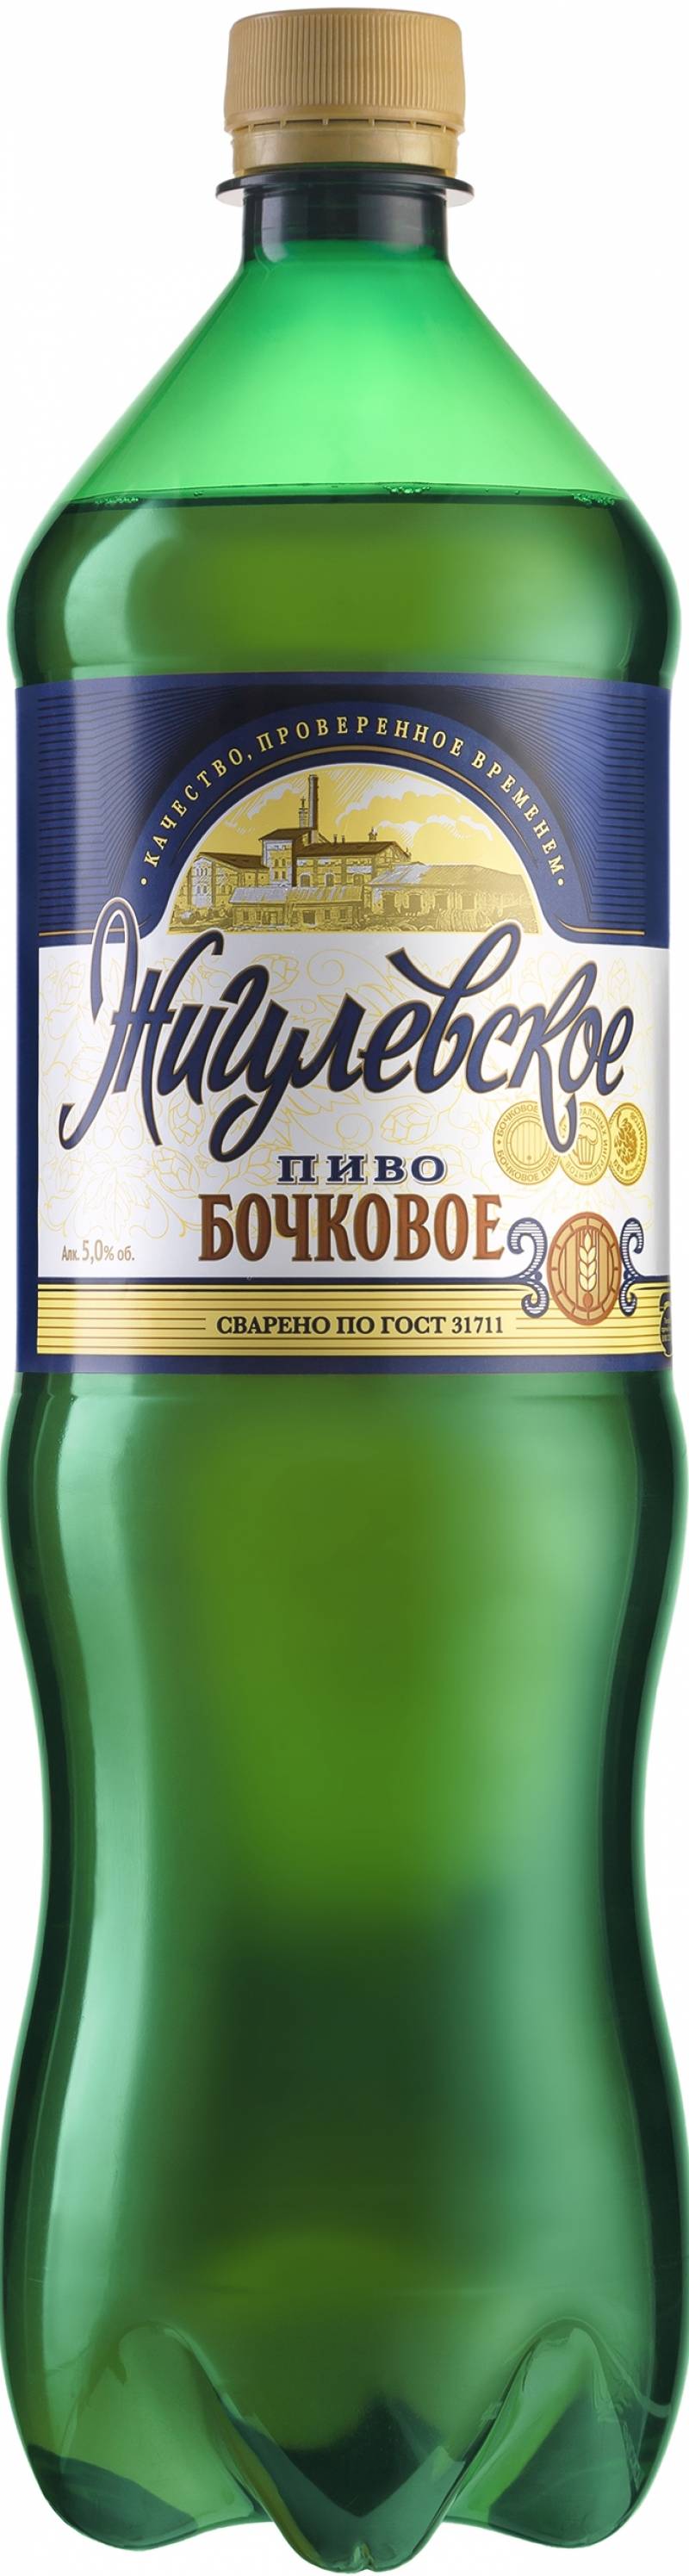 Пиво Жигулевское Бочковое 1,35 л. (Россия)